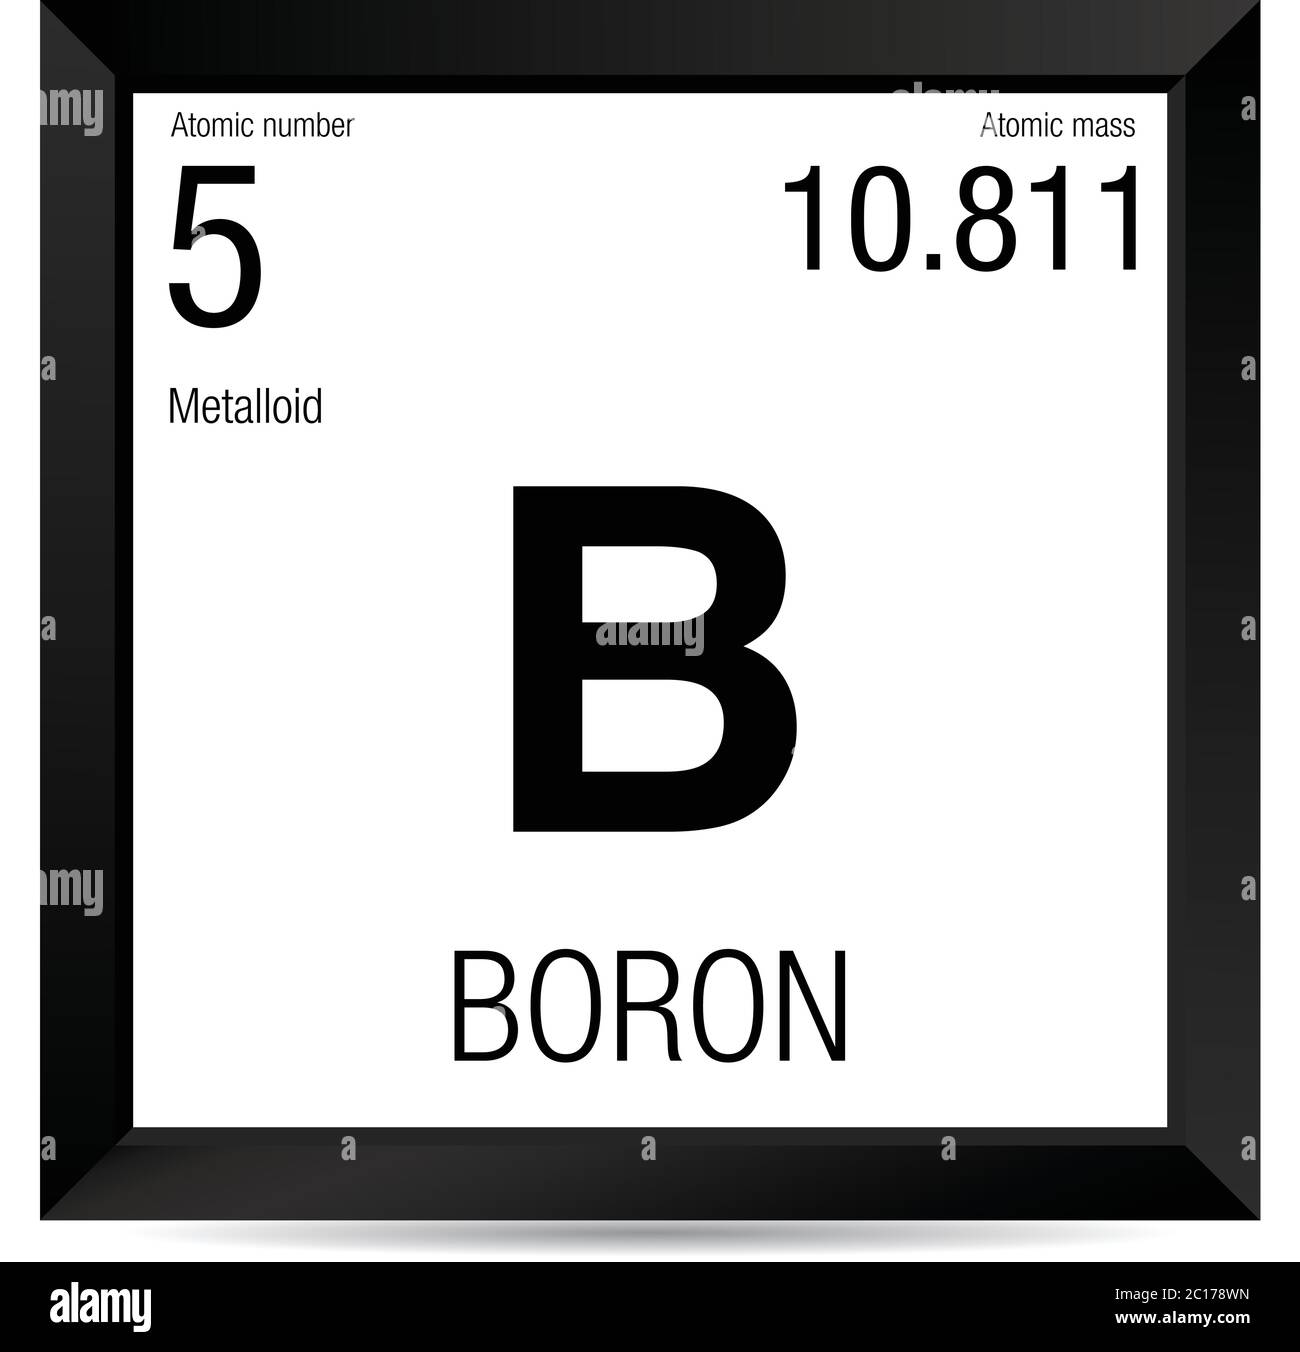 Symbole de bore. Élément numéro 5 du tableau périodique des éléments -  Chimie - cadre carré noir avec fond blanc Image Vectorielle Stock - Alamy